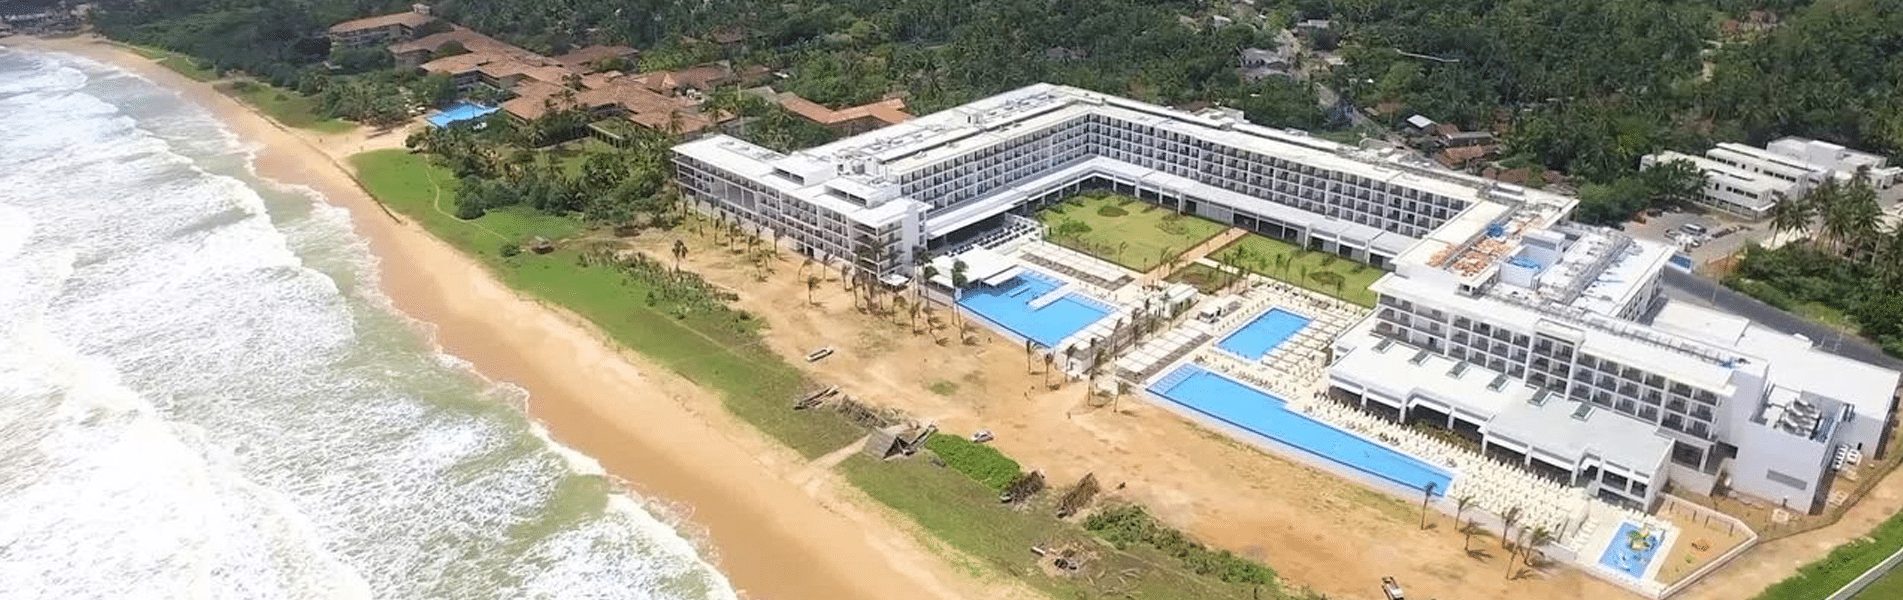 RIU hotels Sri Lanka